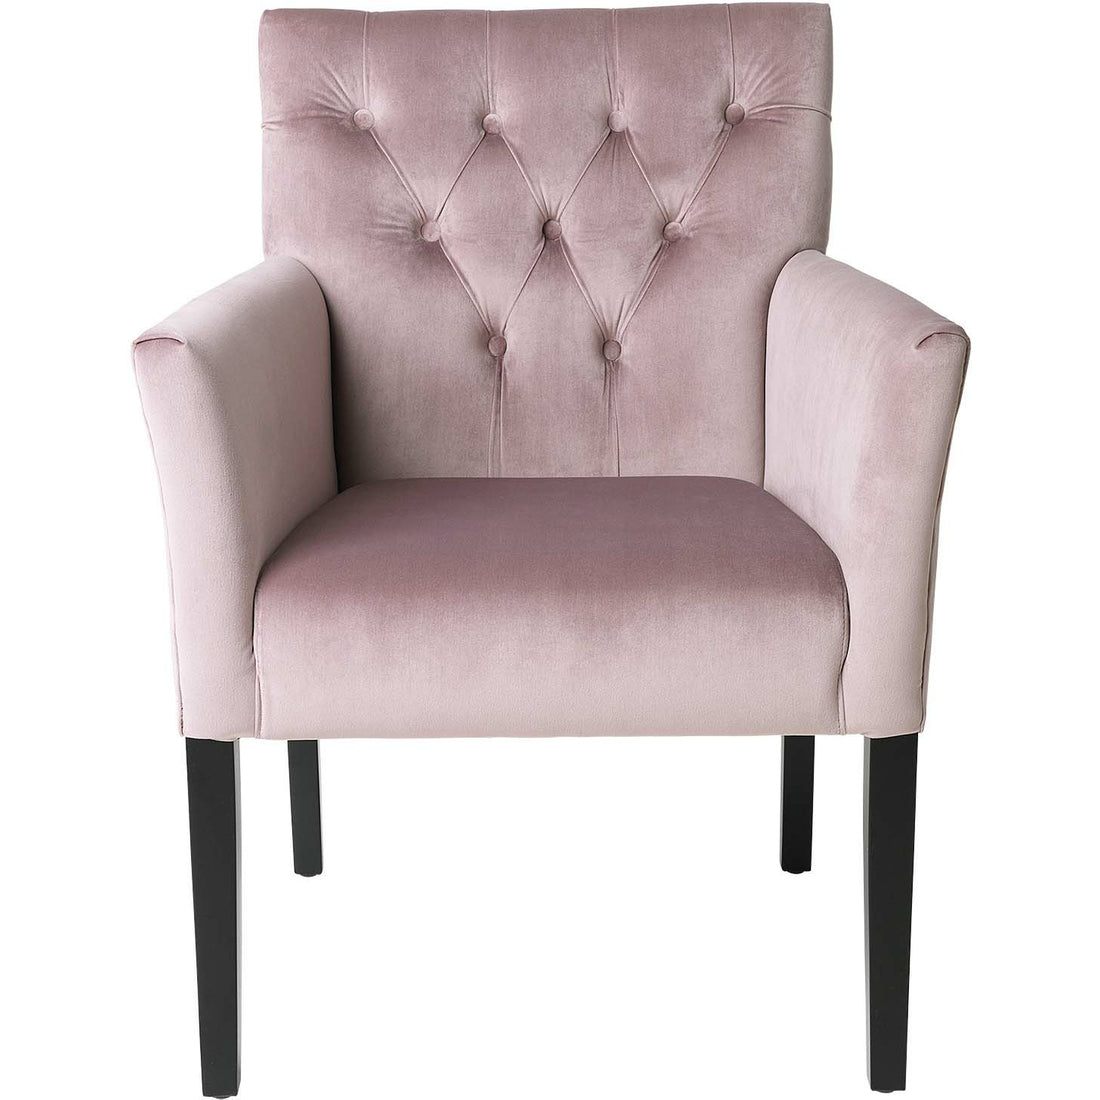 Cozy Living Chair - Sander Dining chair - Velvet - OLD ROSE*